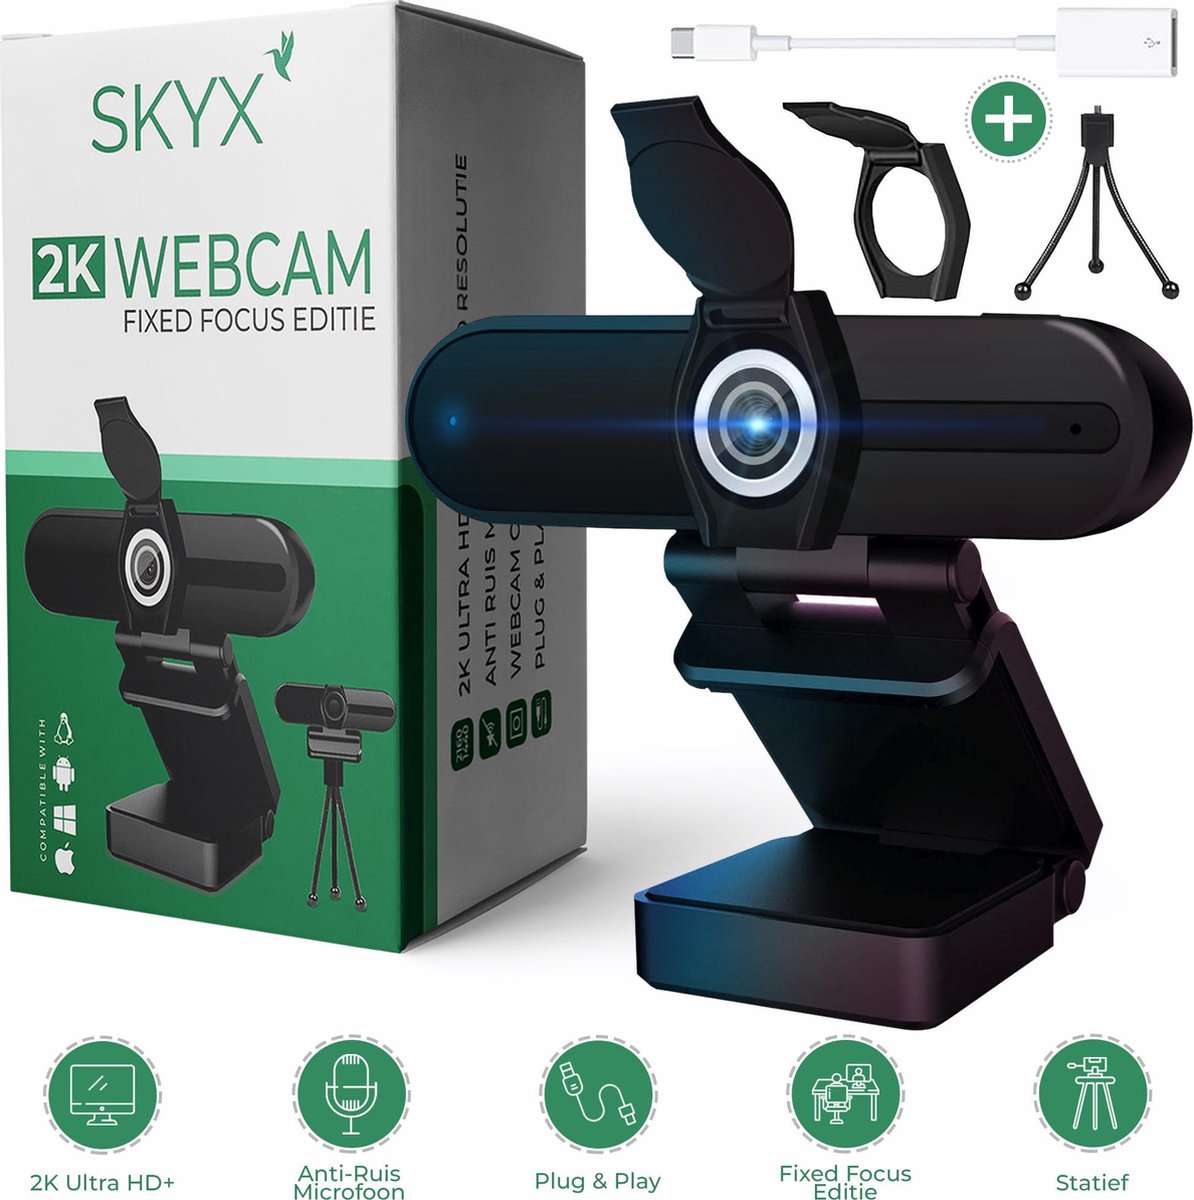 2k Webcam Fixed Focus Edition - Webcam met Microfoon - Webcam Cover - Streaming Webcam - Webcam voor PC - Full HD webcam - Meeting Conference - Anti Ruis Webcam - Windows & Apple/Mac - 2160p - Vergaderingscamera - Twitch - Skype - Zoom